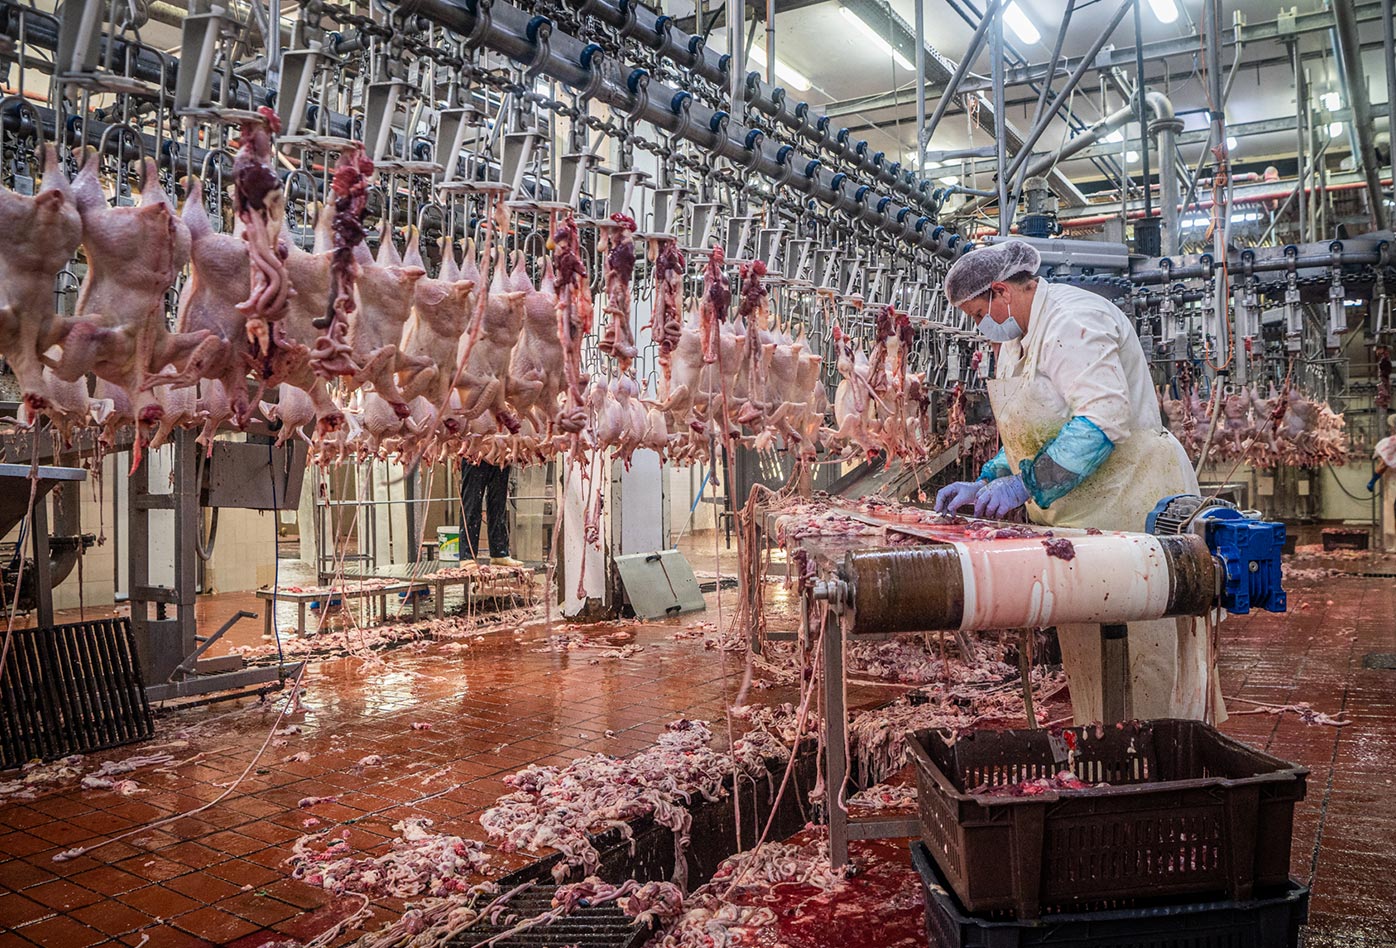 En una granja procesadora de pollos en Grecia, los órganos internos de los pollos asesinados, son removidos por una trabajadora y puestos en una cinta transportadora mecanizada. Esta planta tiene la capacidad de procesar hasta 10,000 aves al día, y surte supermercados del país. Milos Bicanski・We Animals Media